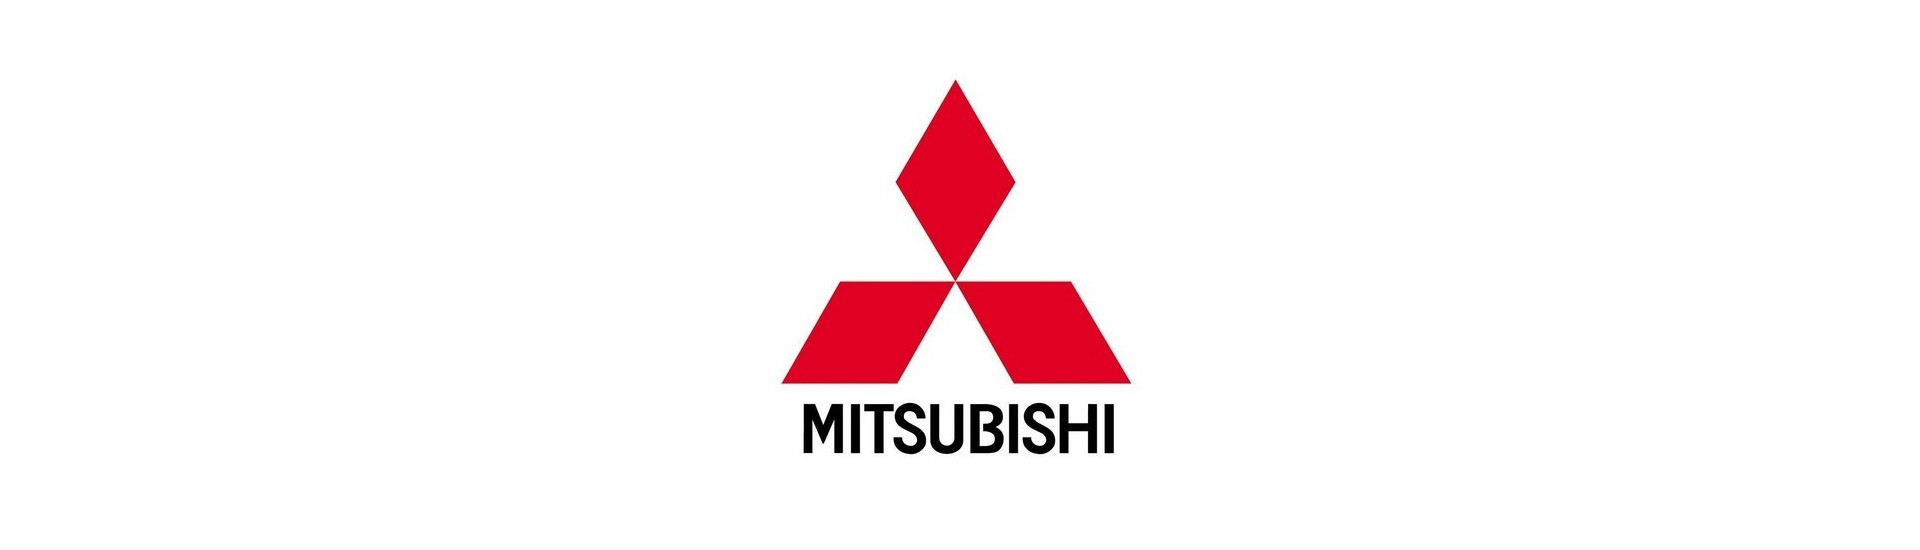 Vorheizungslampen zum besten Preis Auto ohne Lizenz Mitsubishi